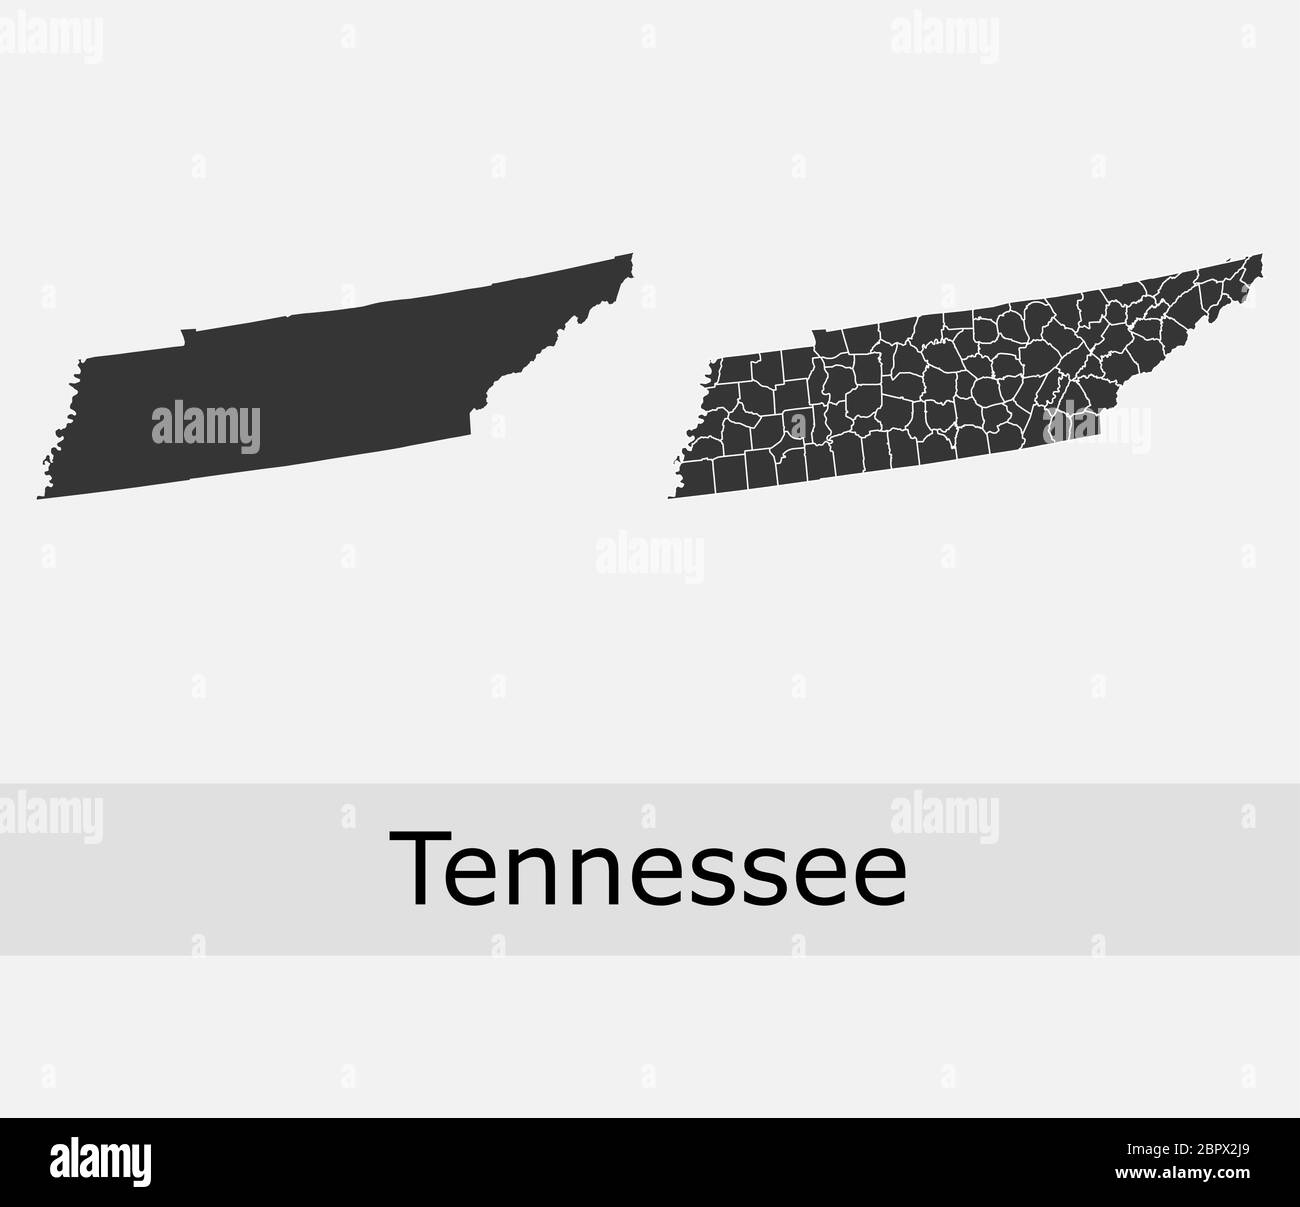 Cartes du Tennessee cartes vectorielles comtés, cantons, régions, municipalités, départements, frontières Illustration de Vecteur